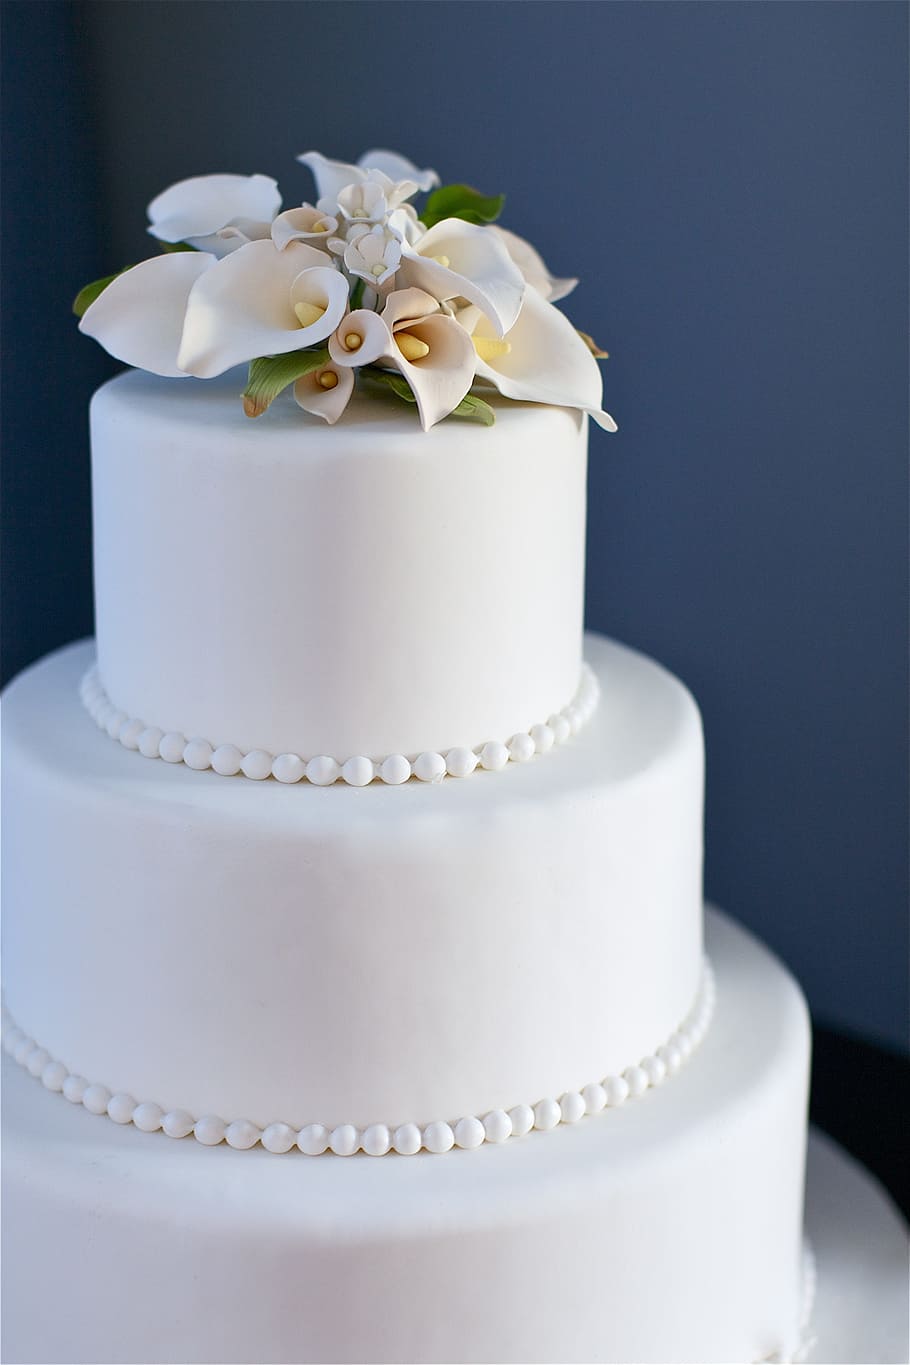 white icing coated 3-tier fondant cake photograph, blue, wedding cake